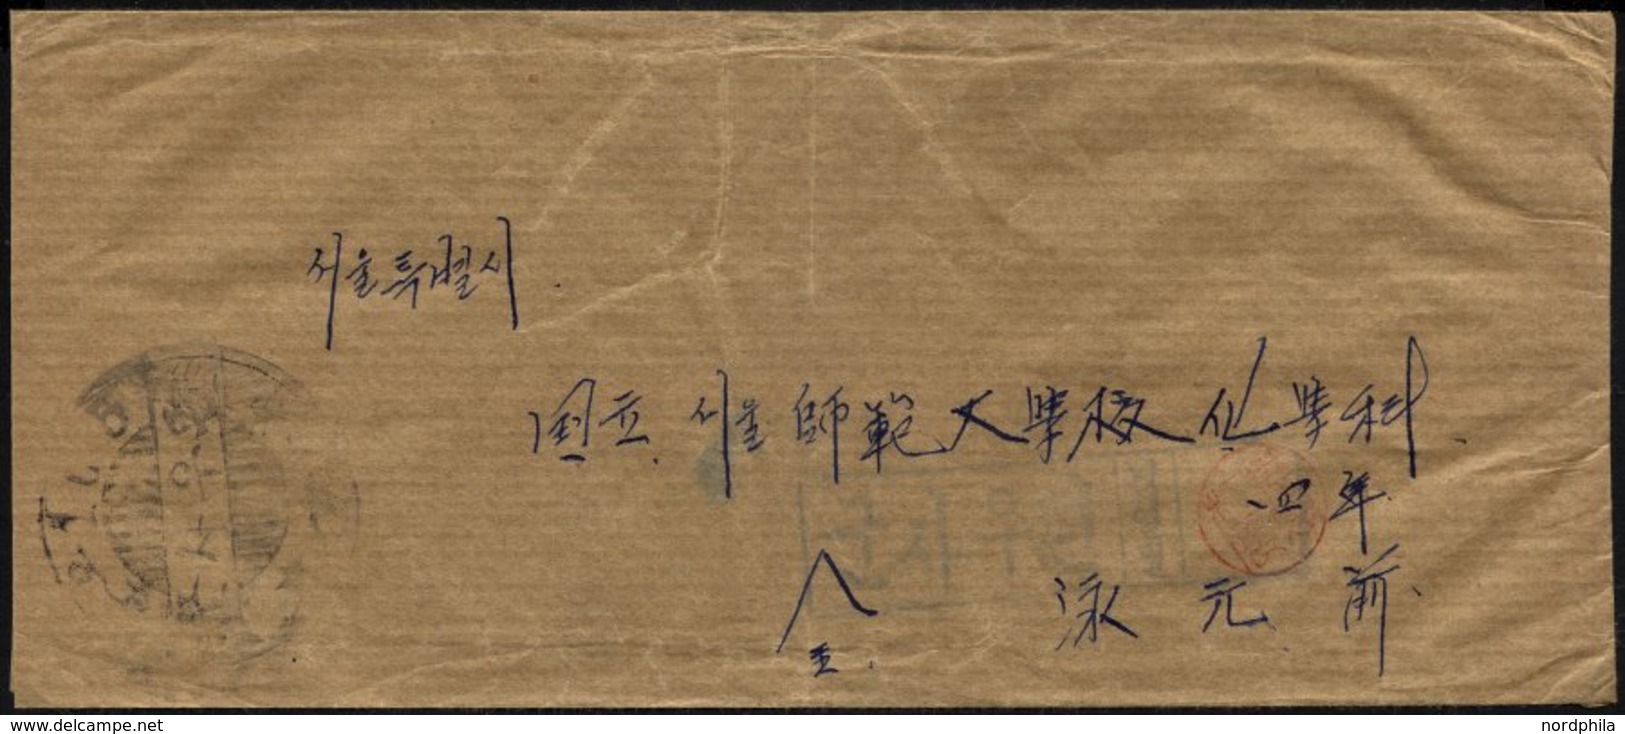 KOREA-SÜD 1950, Feldpostbrief Mit Stempel Vom Feldpostamt 101, Pracht - Korea, South